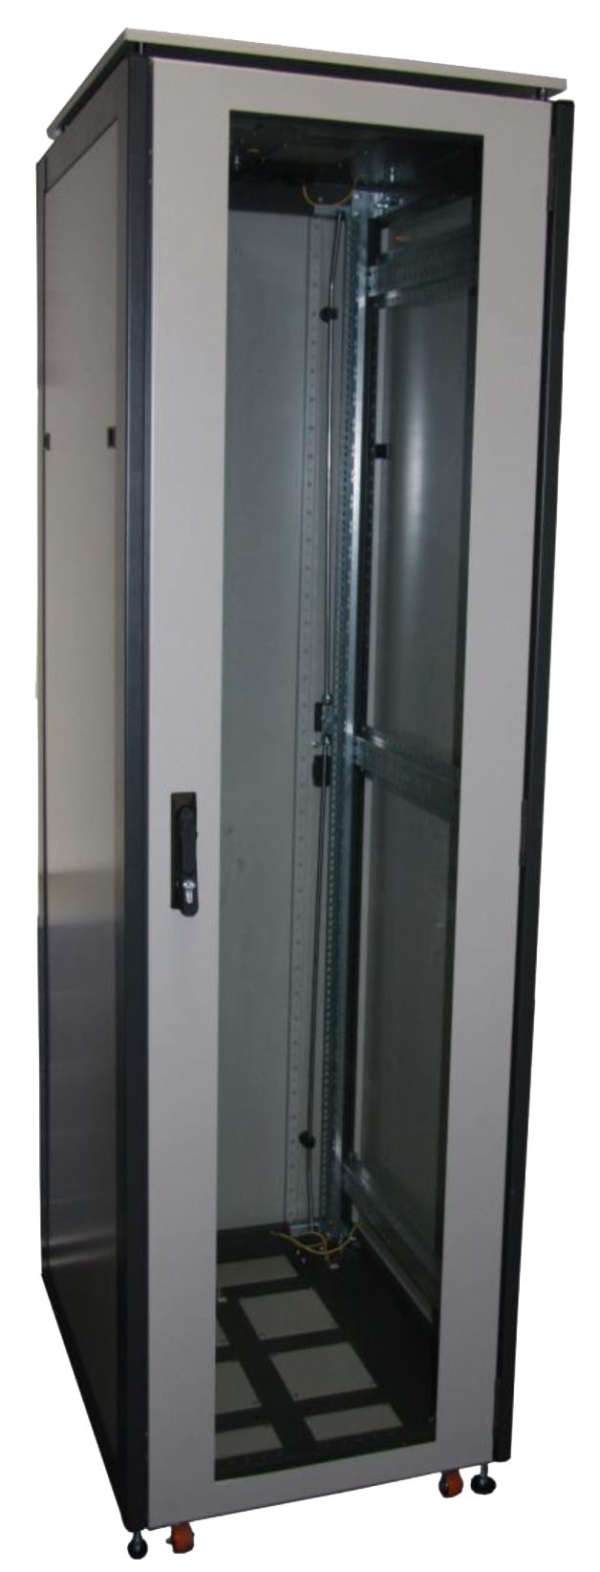 ССКТБ ТОМАСС ШТК-6618Э-00 - шкаф телекоммуникационный 19", 37U, 600х600х1800 мм, с металлической и стеклянной дверью